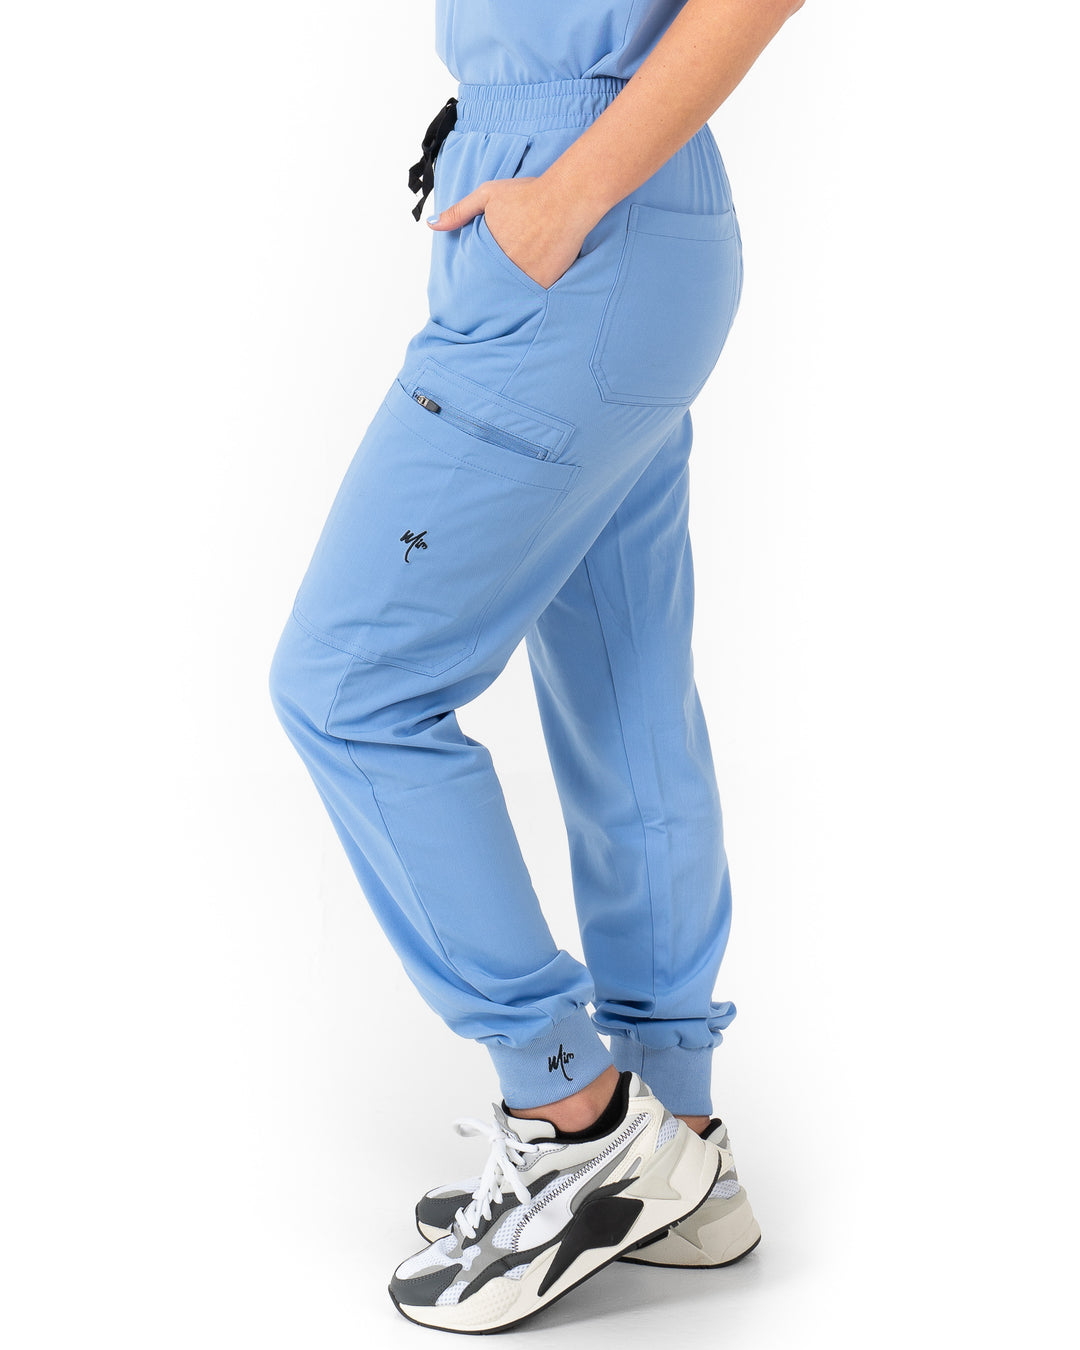 women's Ceil Blue Jogger Scrub Pants - Jogger Scrubs by Millennials In Medicine (Mim Scrubs)  Edit alt text